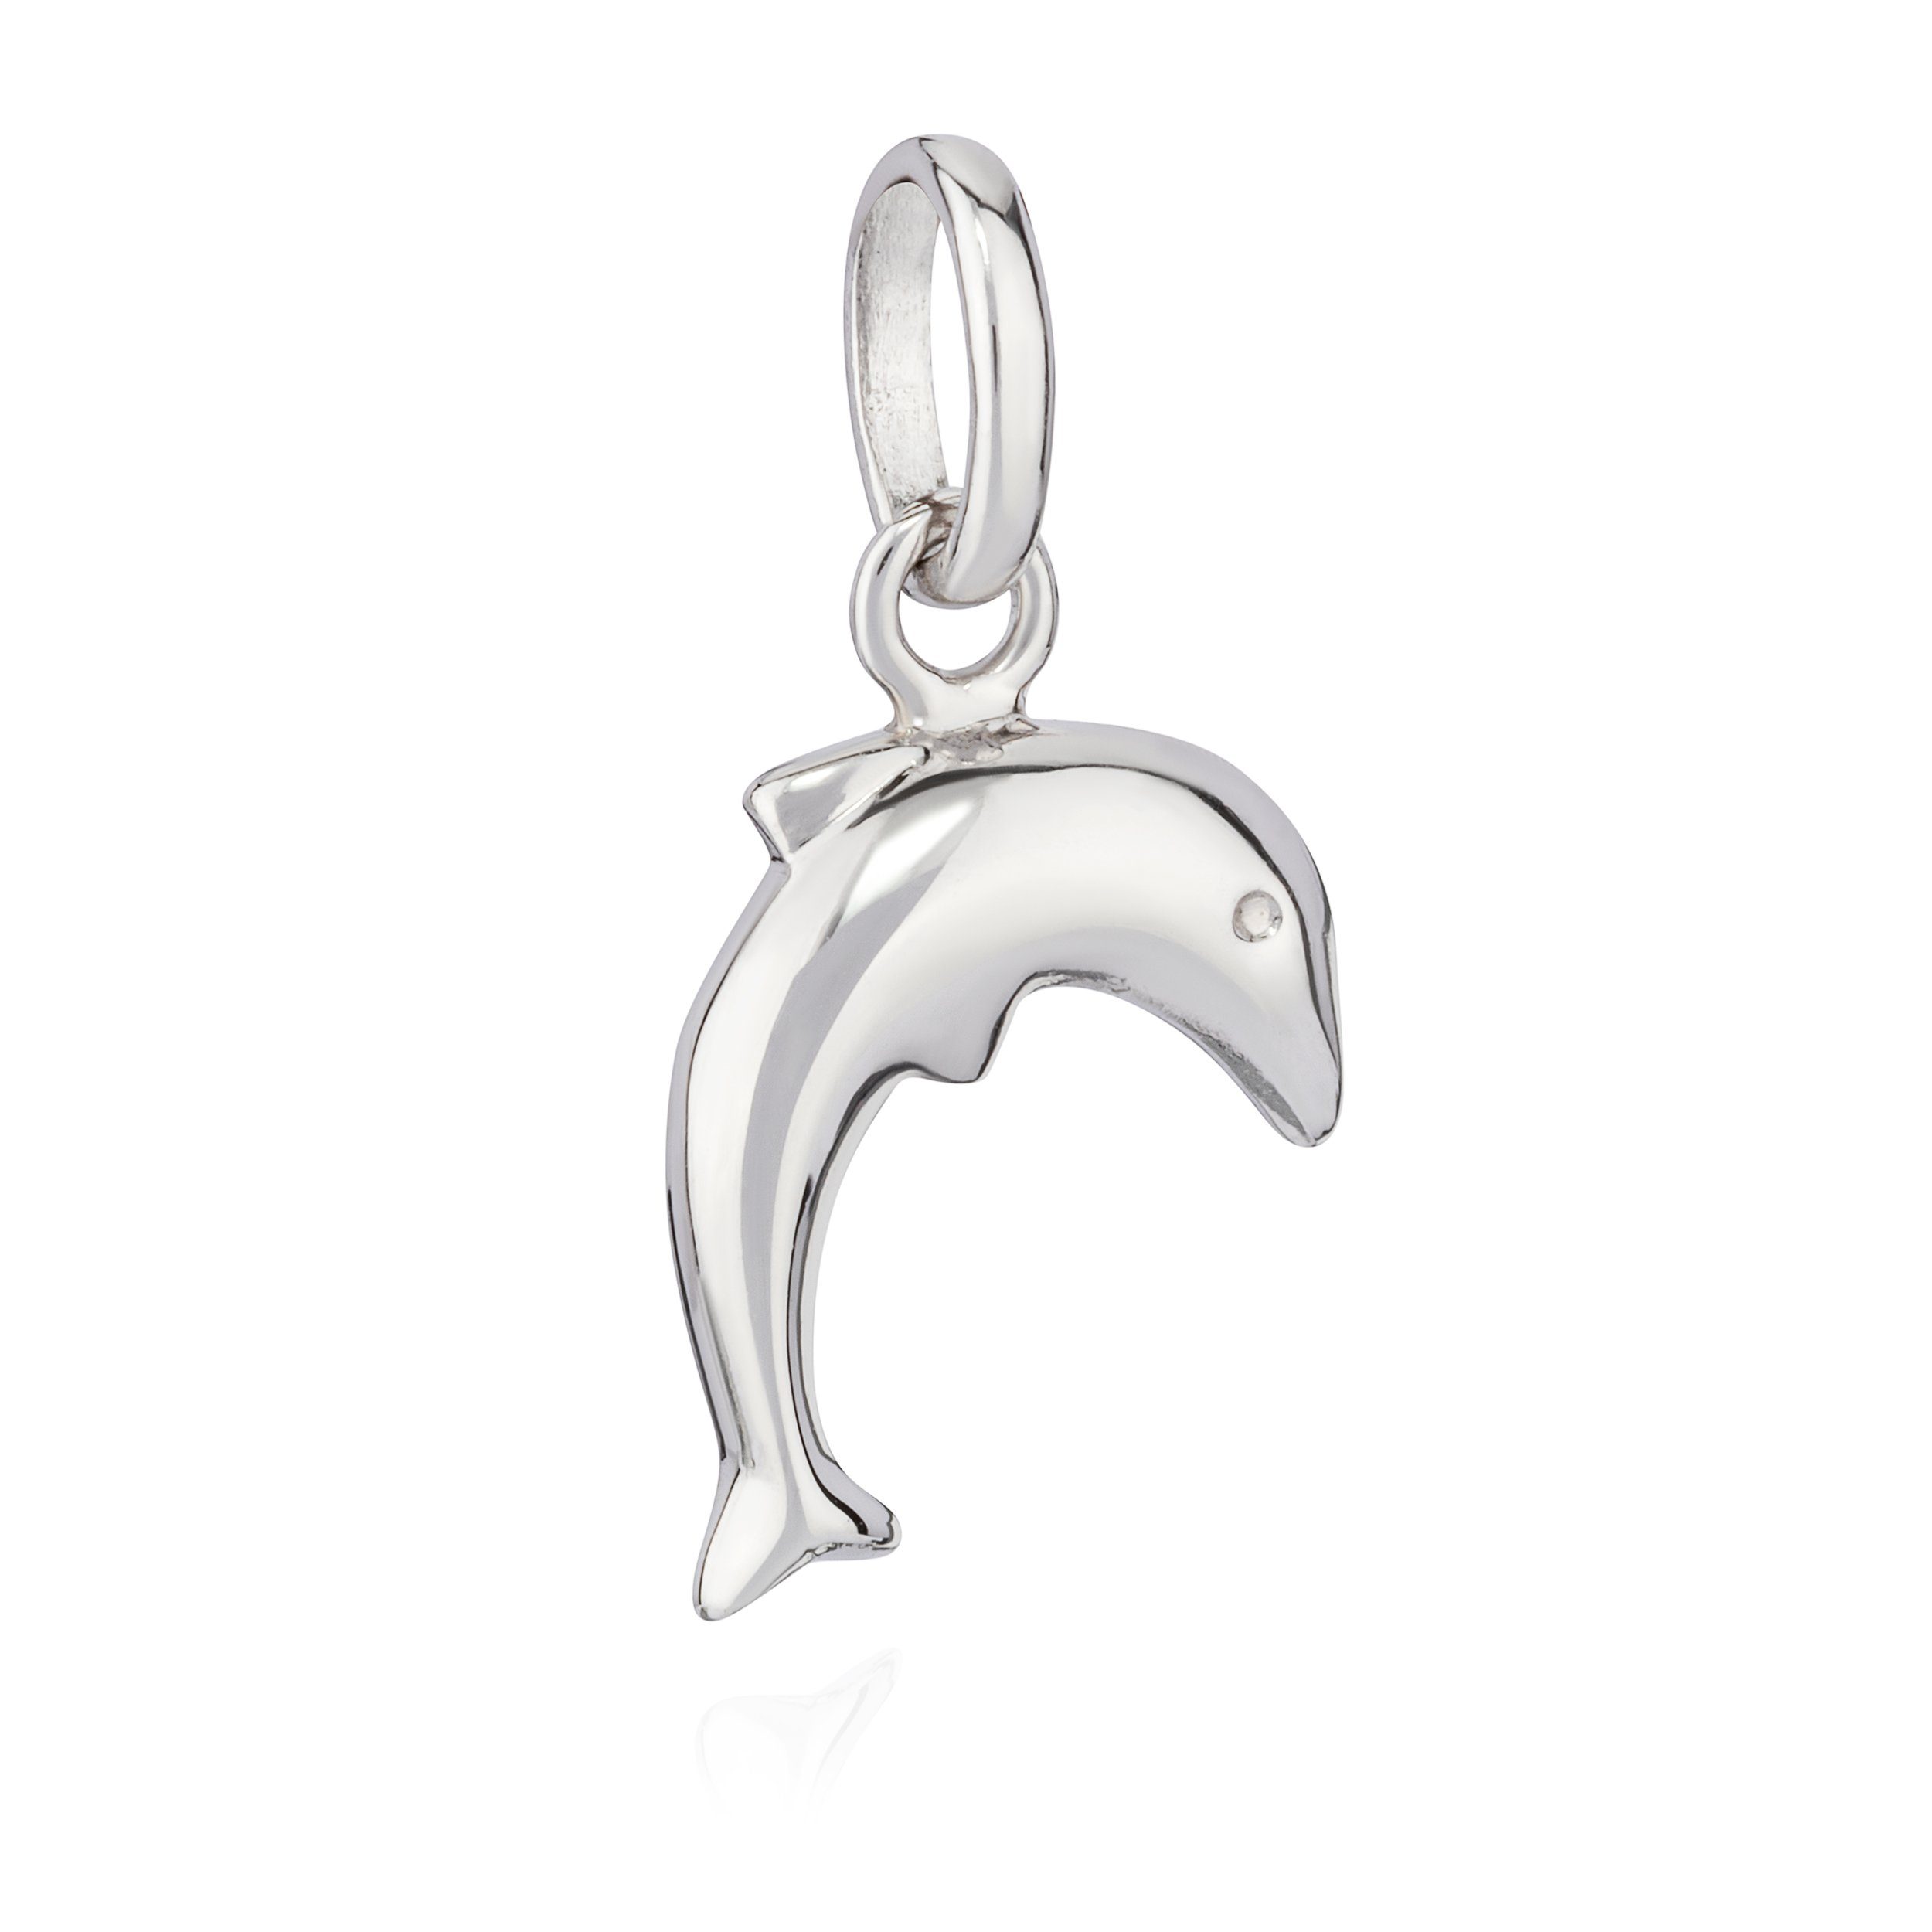 Silber anlaufgeschützt Kettenanhänger NKlaus Delfin g Kettenanhänger 925